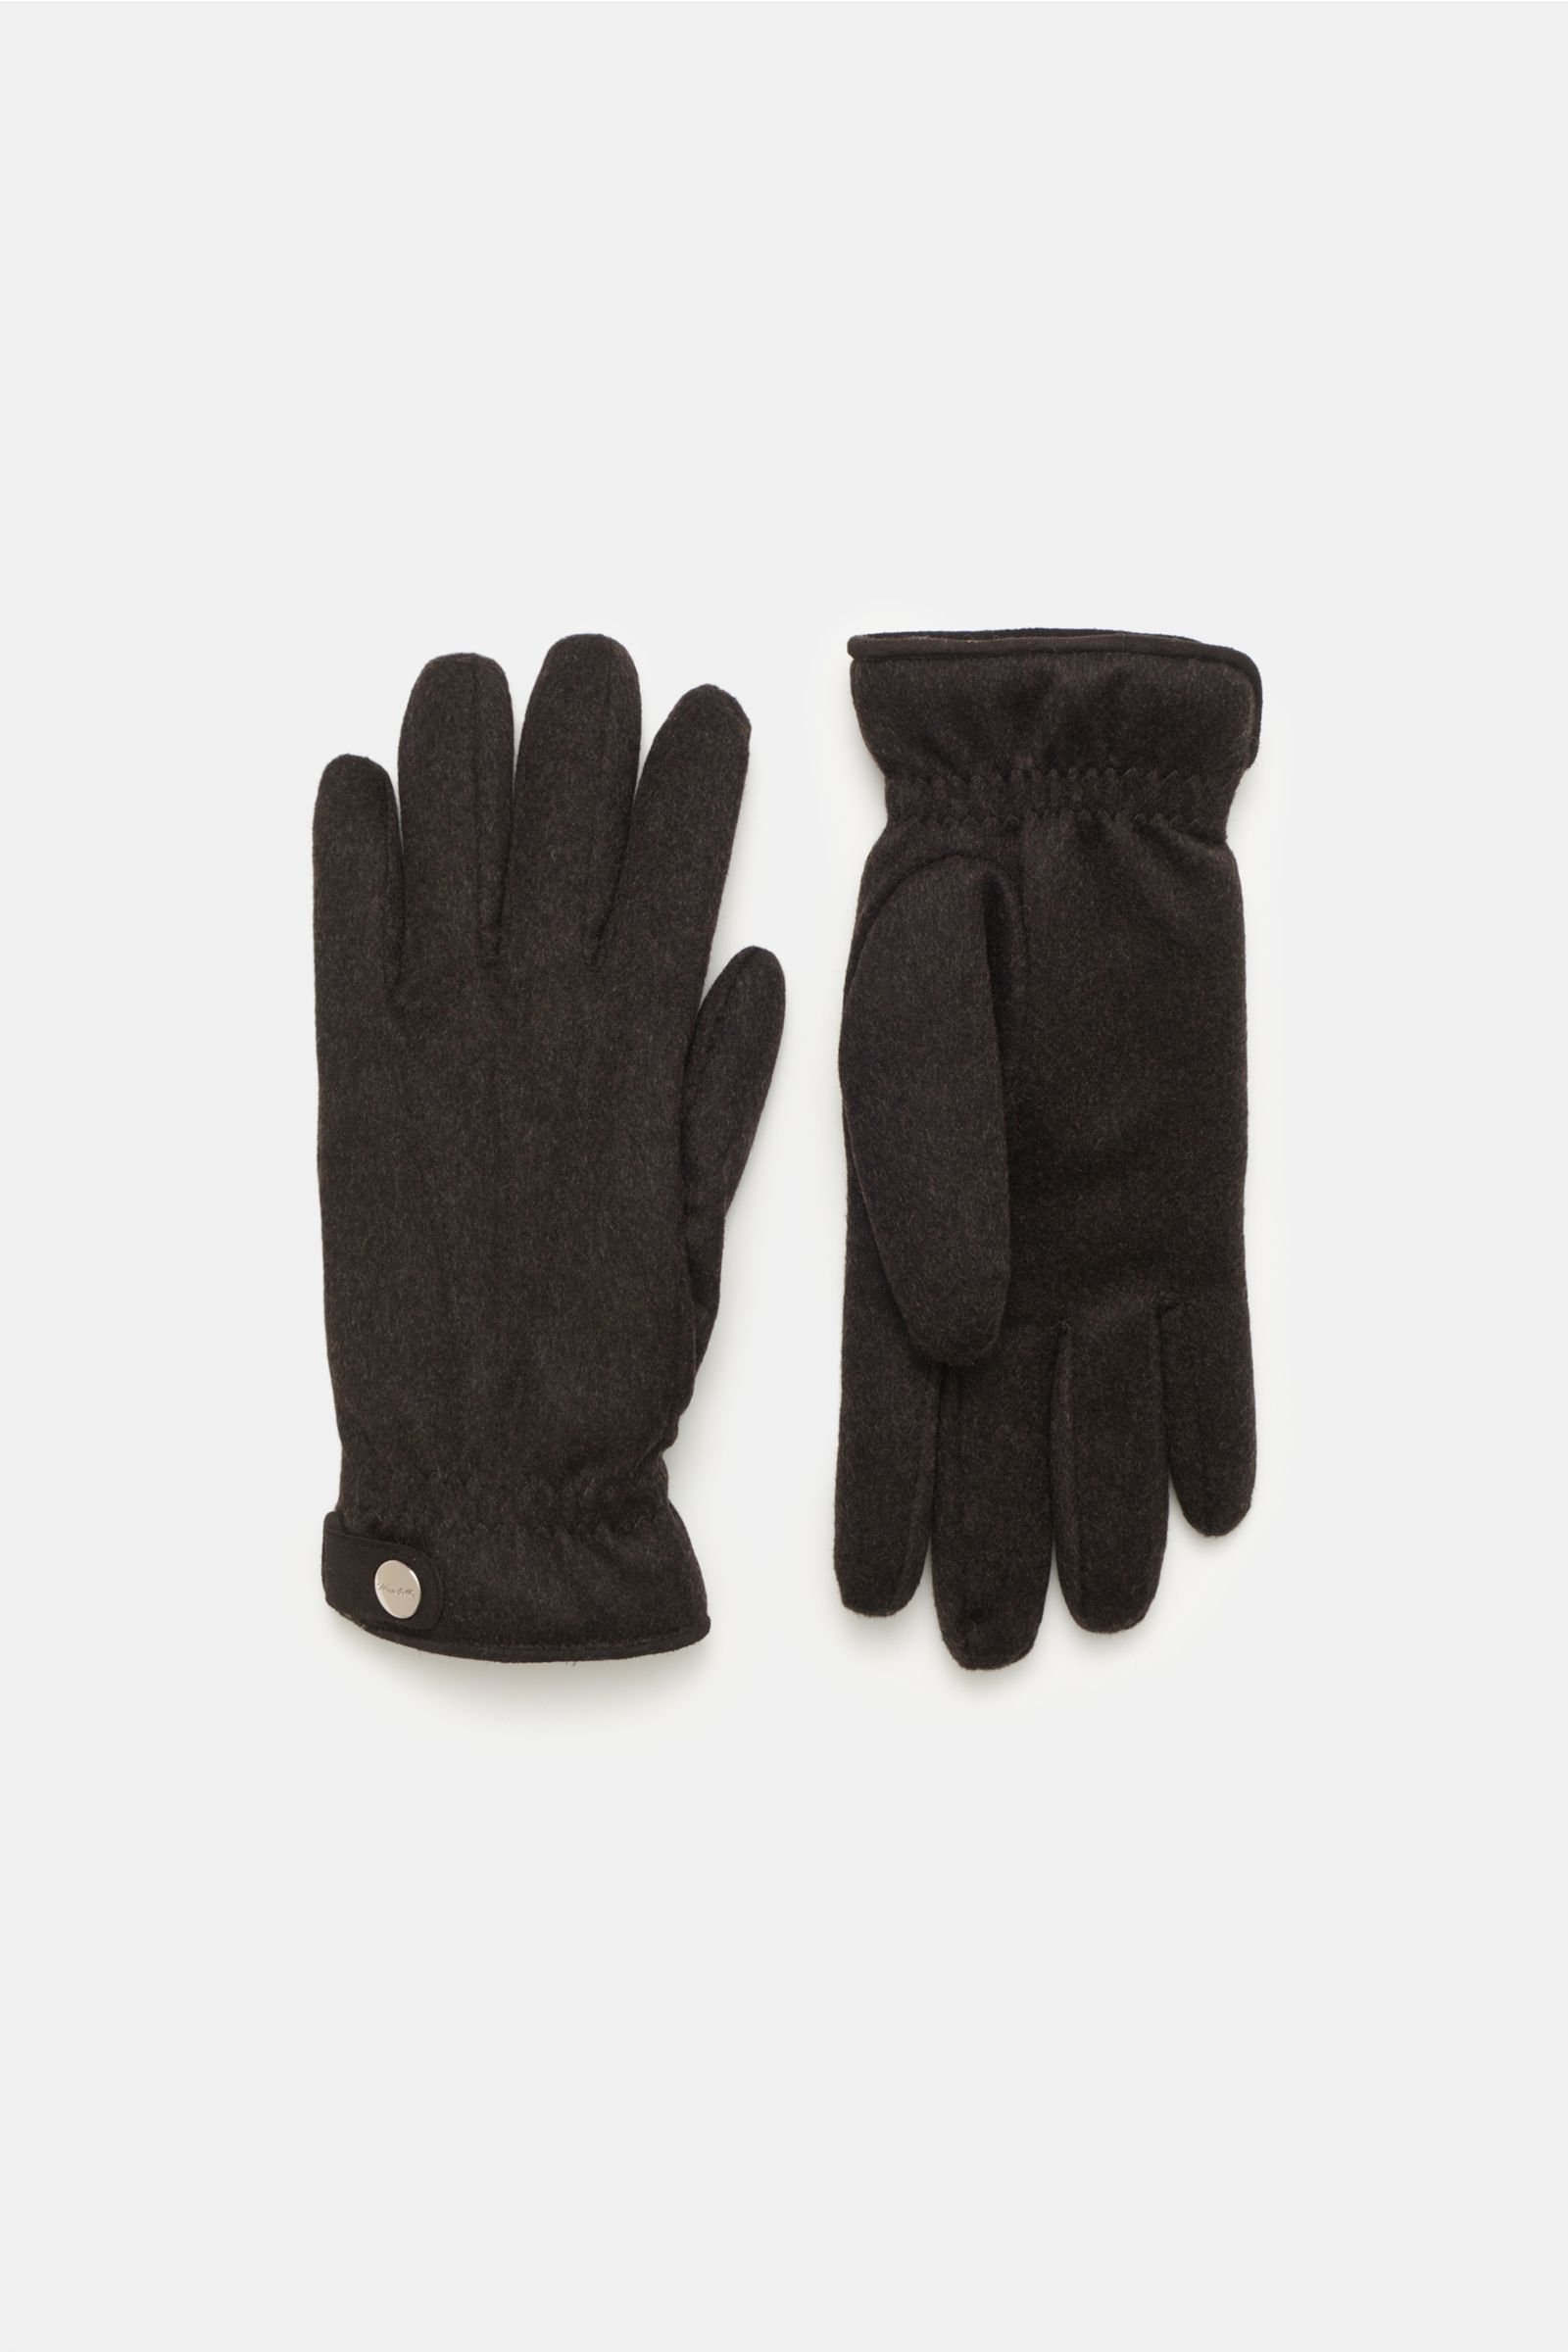 Cashmere gloves dark brown